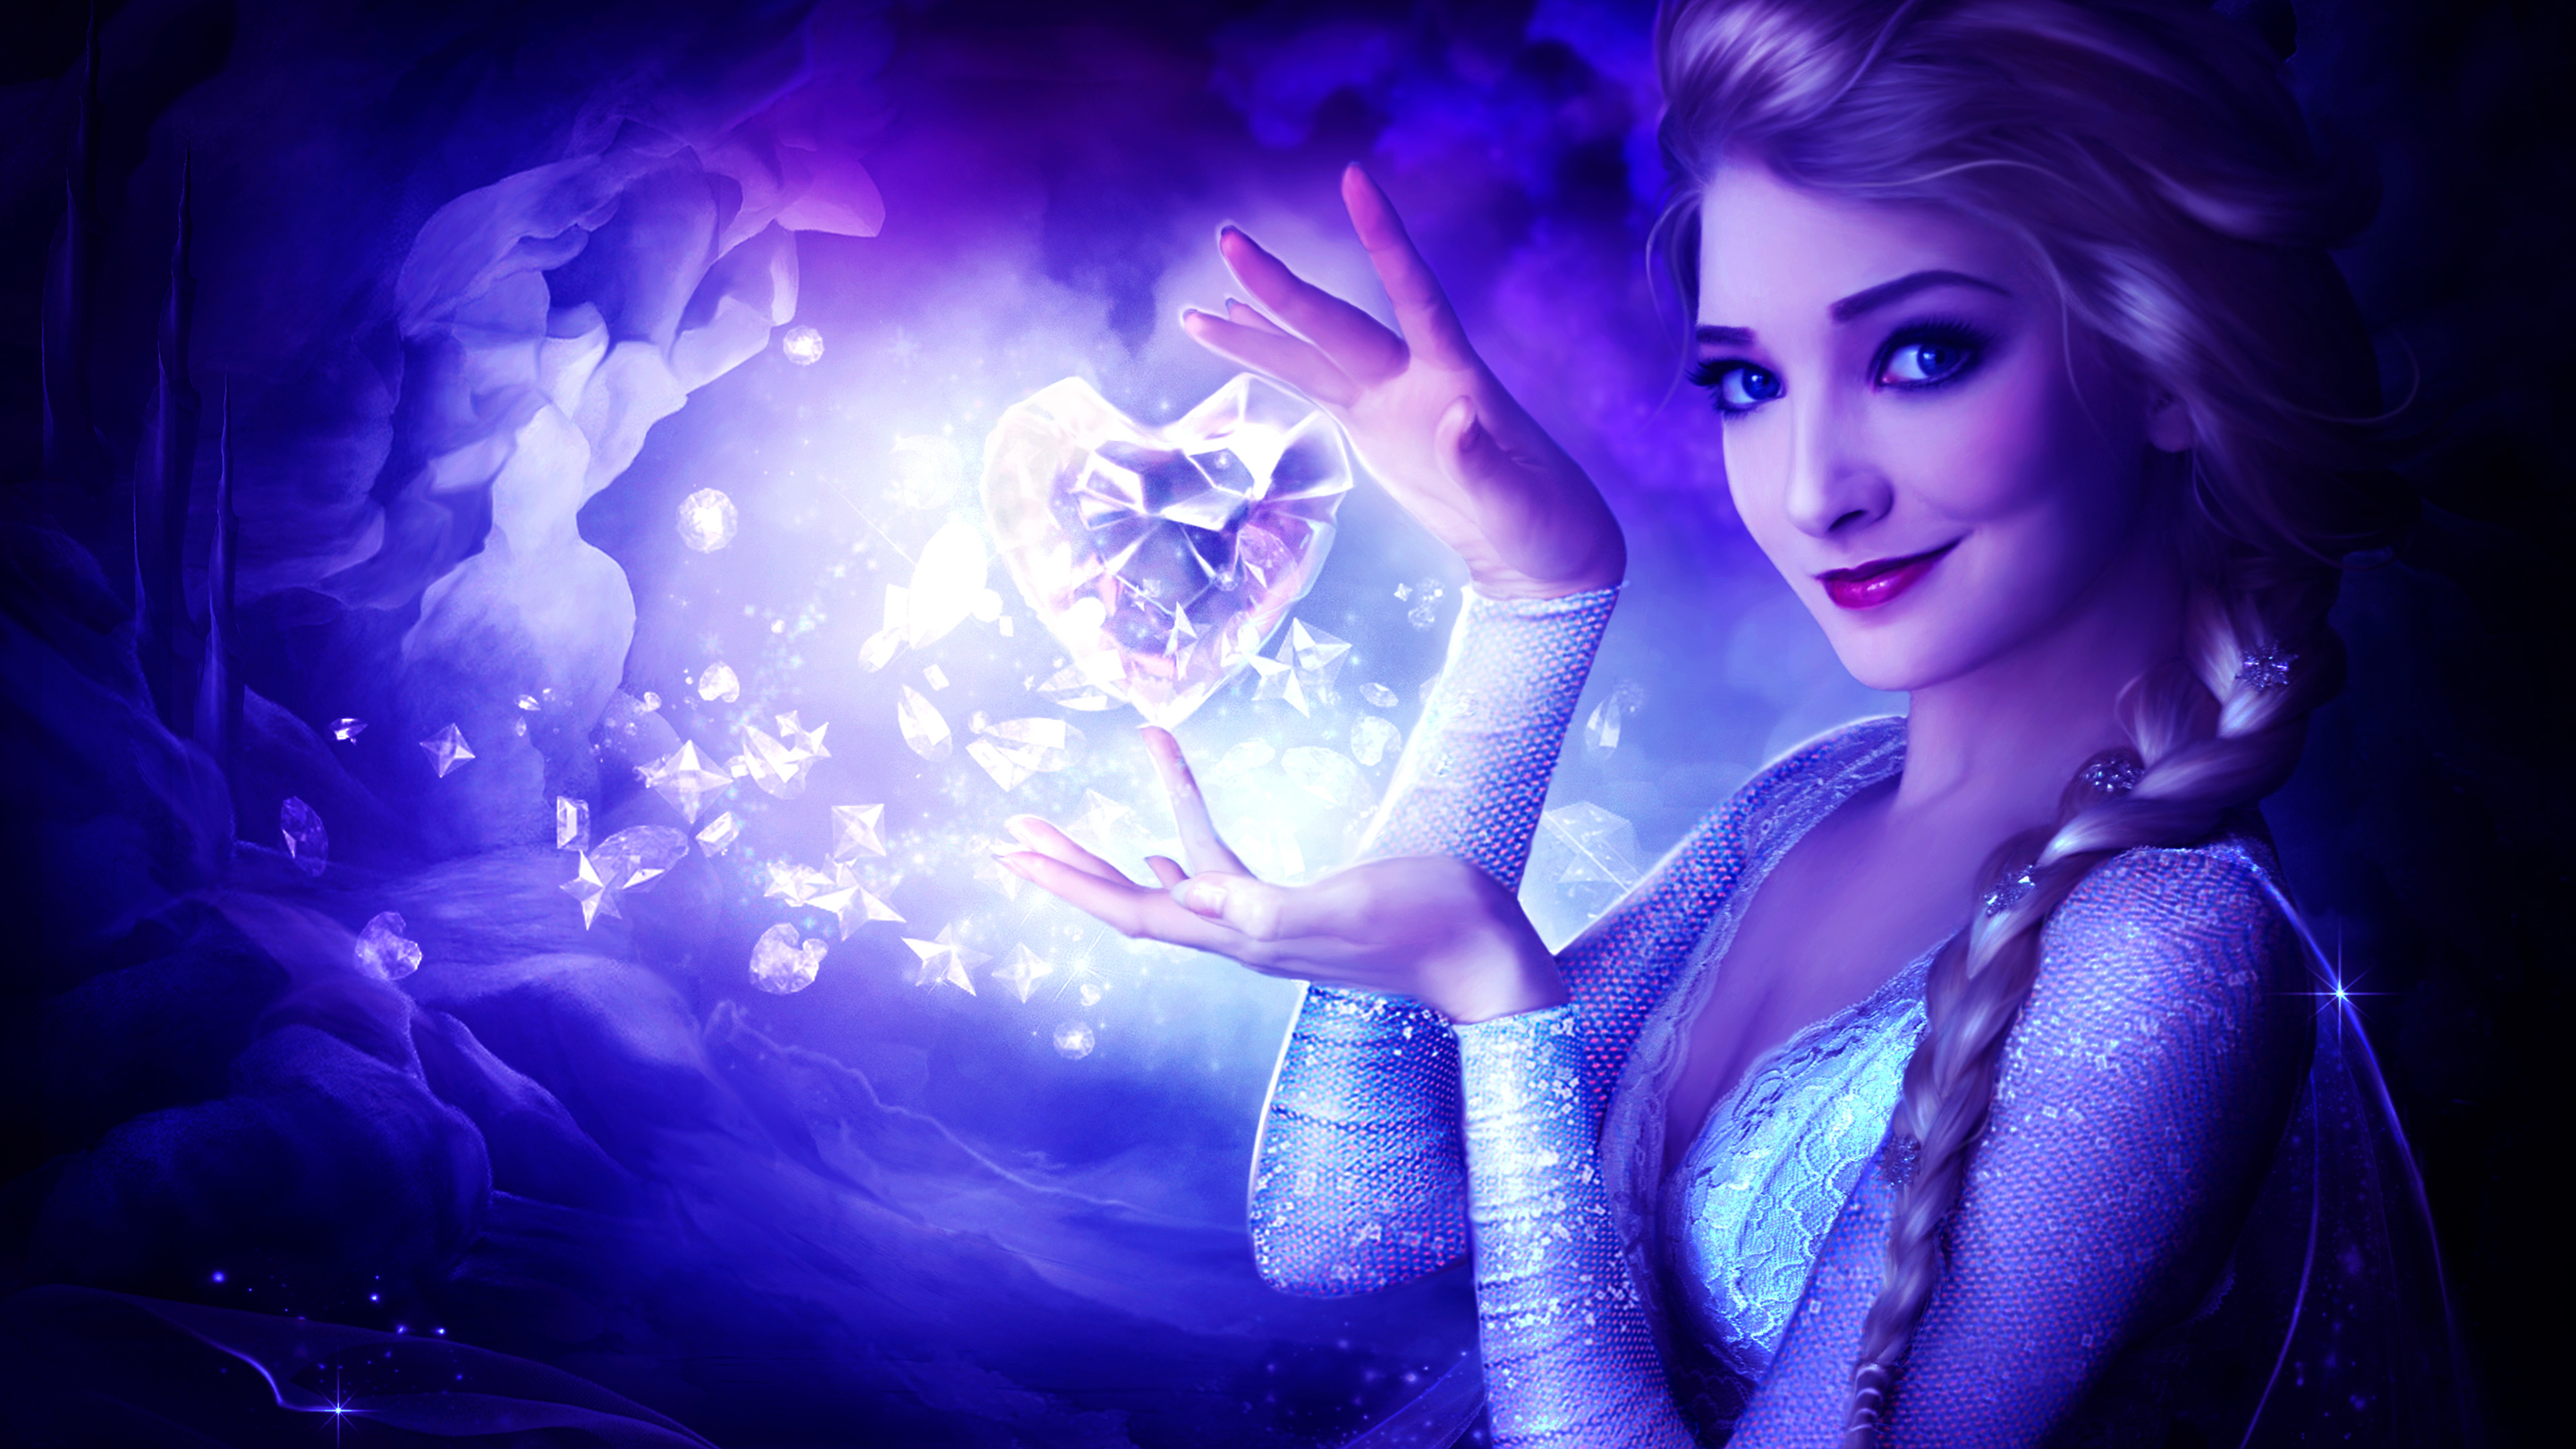 Queen Elsa Frozen Heart - Beautiful Princess Wallpaper Hd , HD Wallpaper & Backgrounds